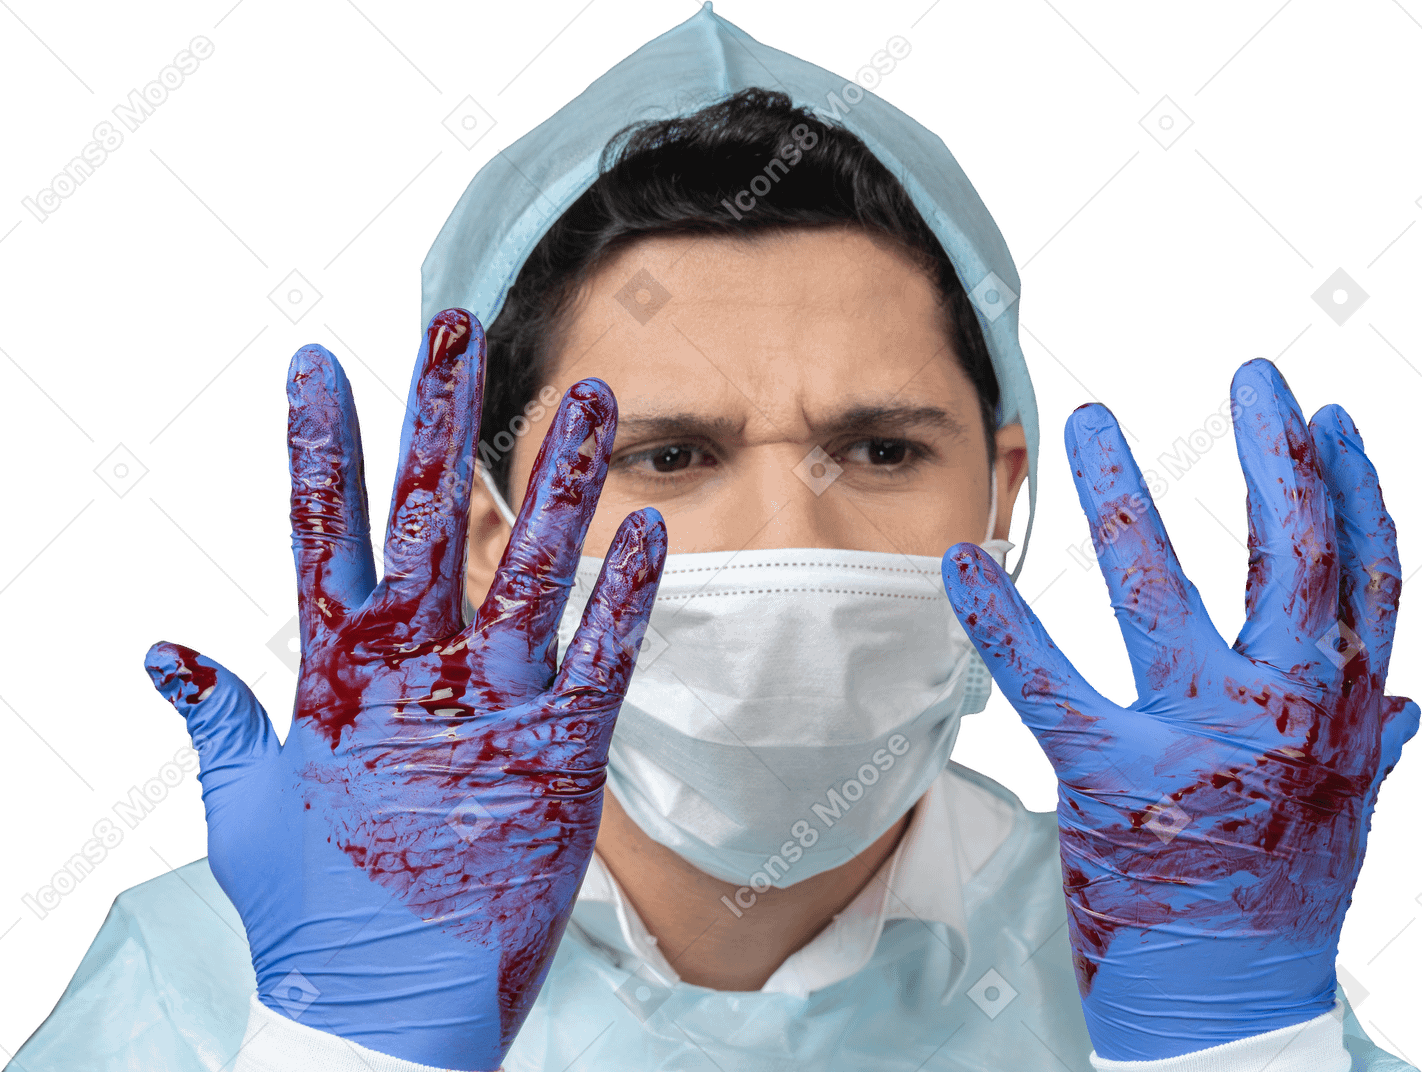 Médico olhando para as mãos cobertas de sangue